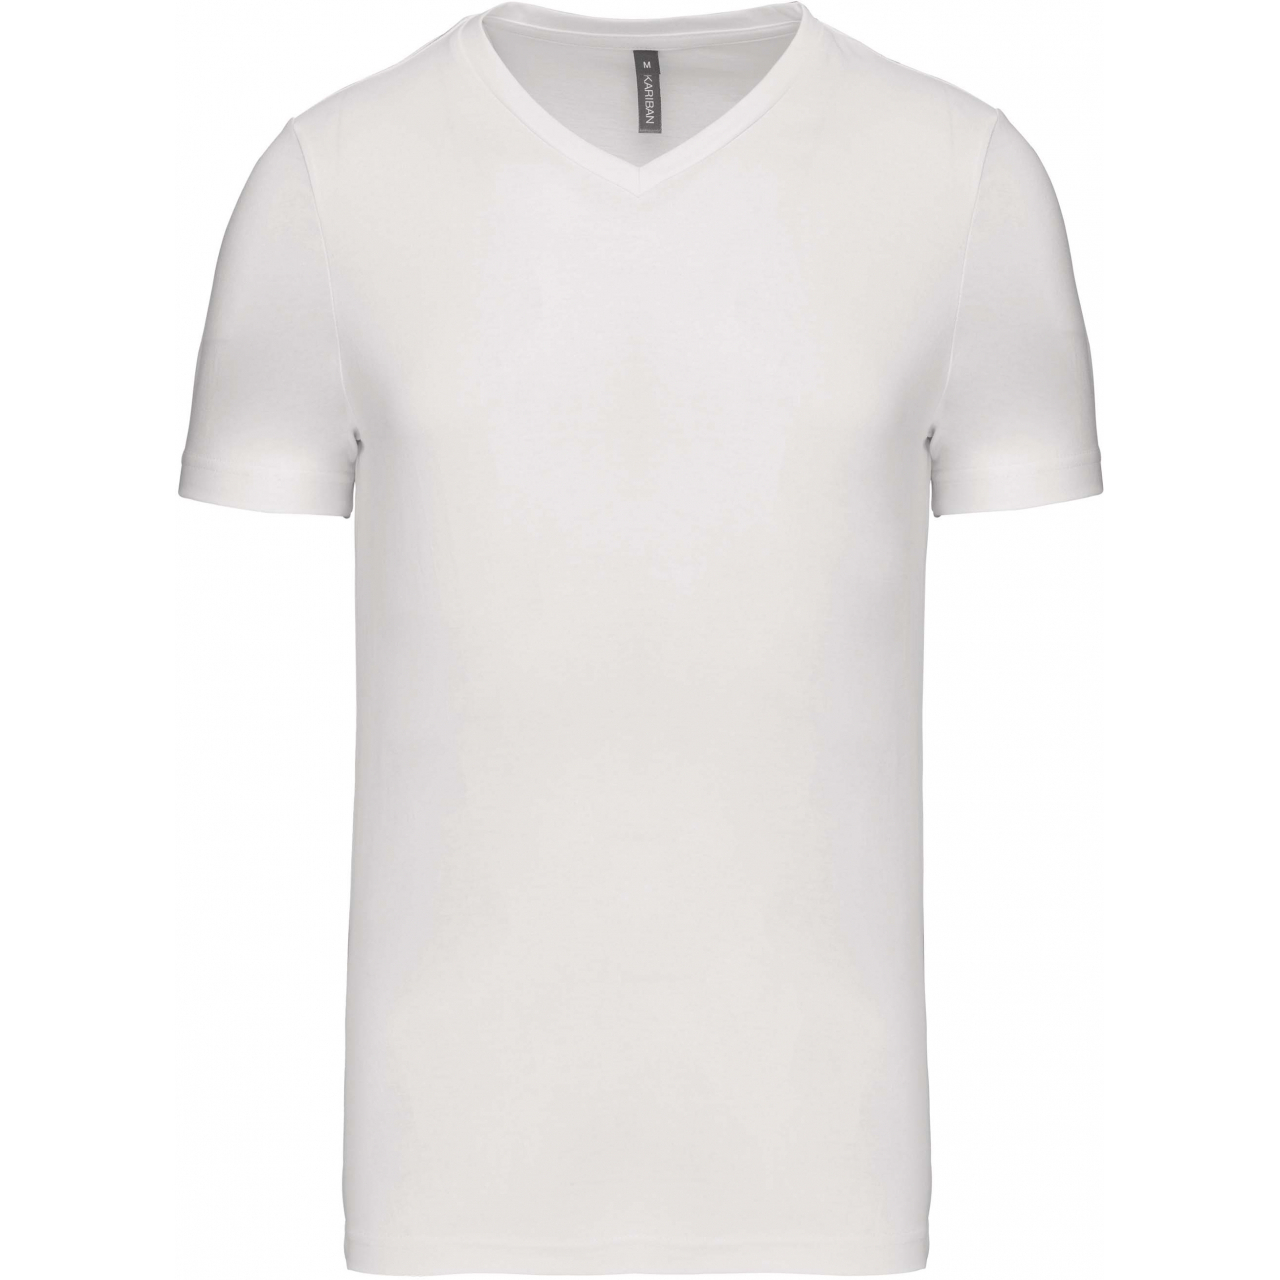 Pánské tričko Kariban krátký rukáv V-neck - bílé, L